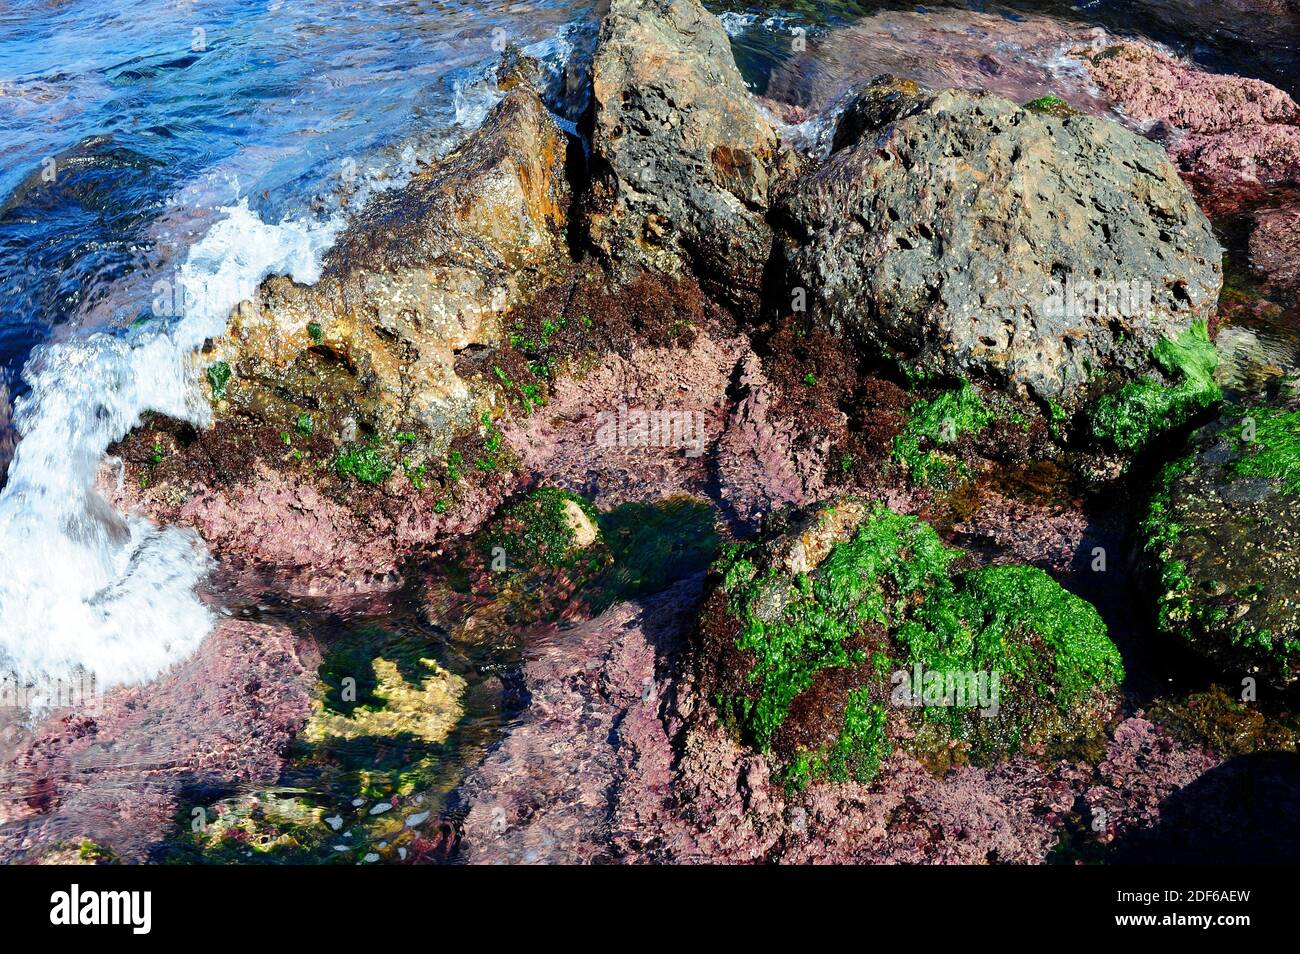 Alghe in costa rocciosa: Lattuga marina (Ulva lactuca), Corallina elongata e Rissoella verrucolosa. Costa Brava, Girona, Catalogna, Spagna. Foto Stock